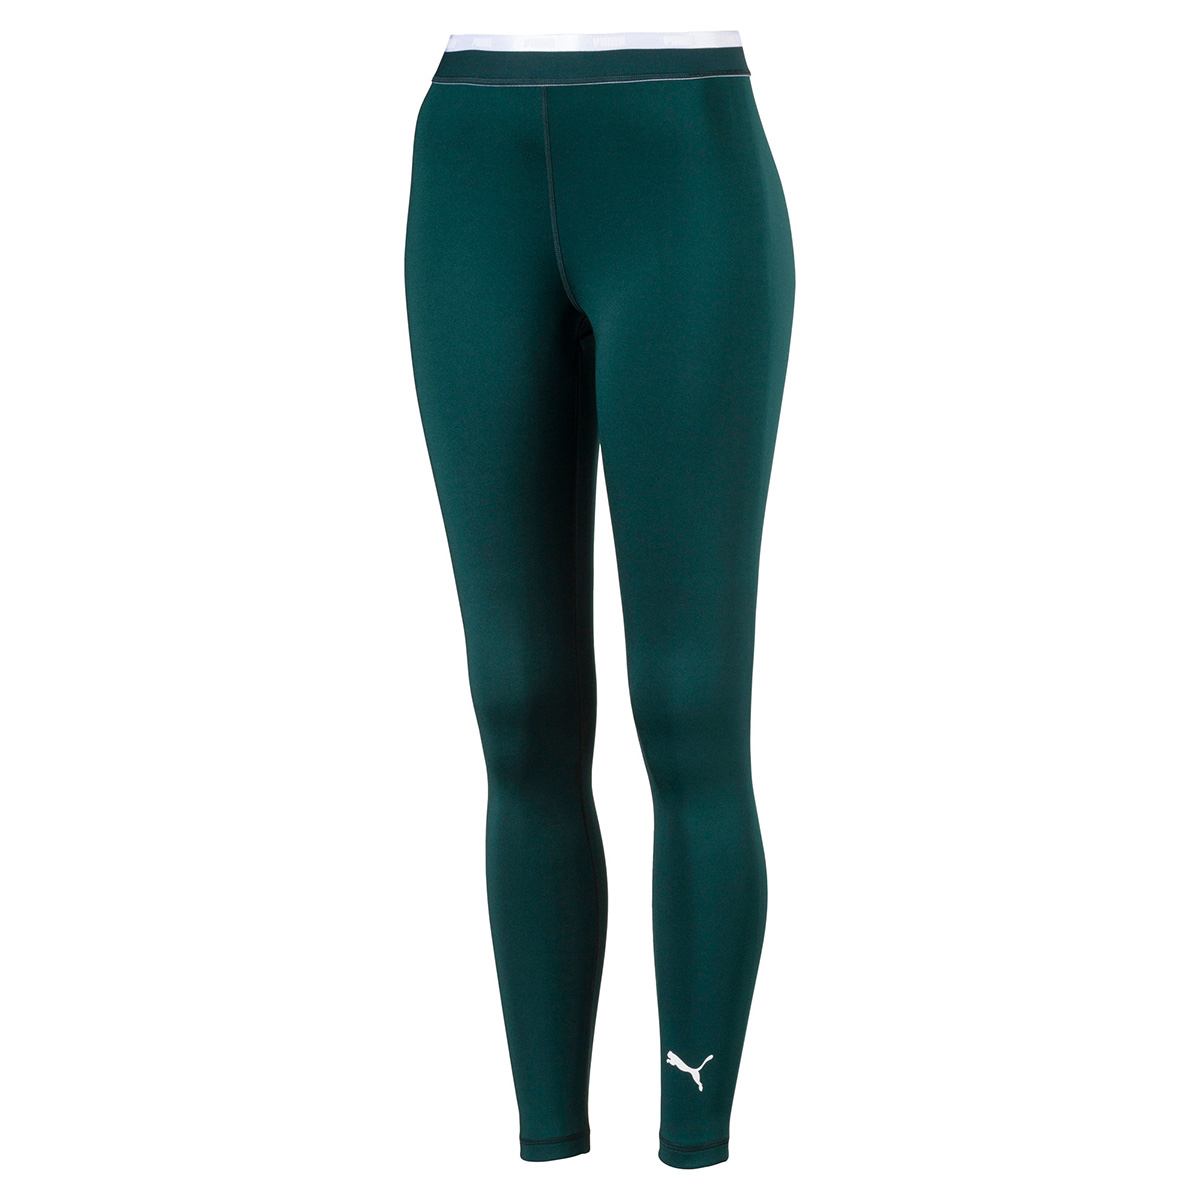 PUMA Damen Soft Sports Leggings Pant Hose Pants Fitnesshose grün 843682